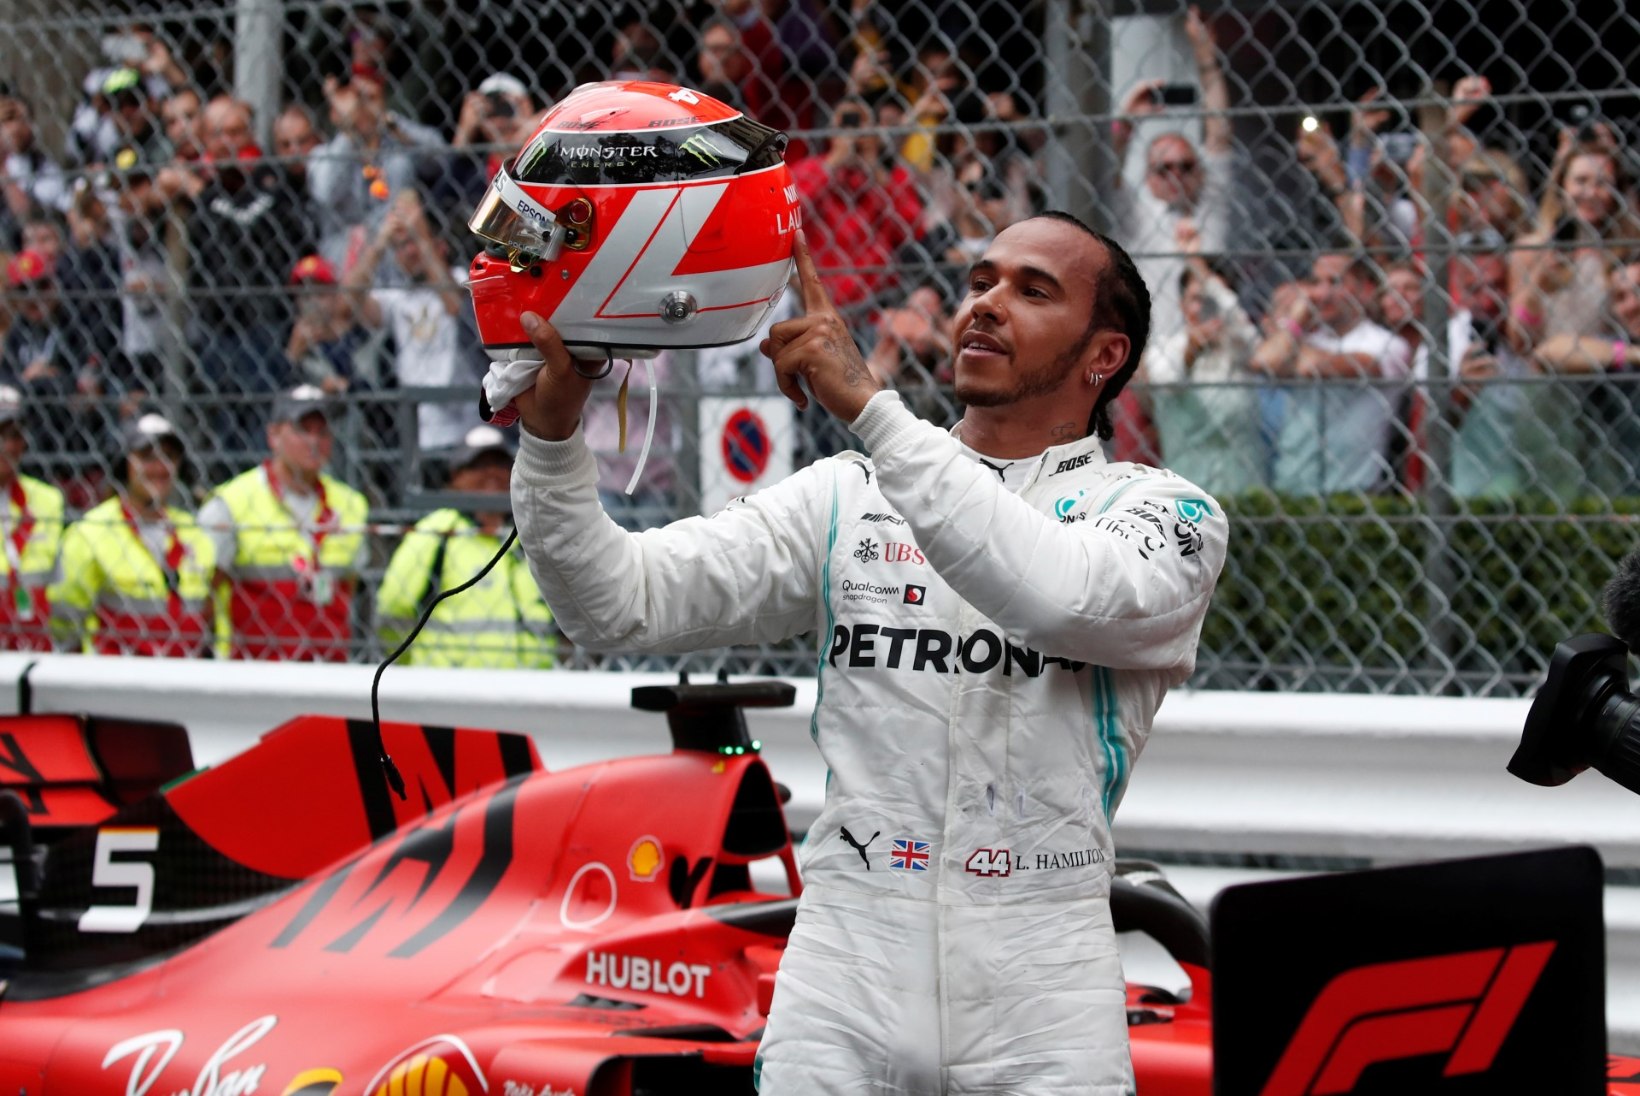 Monaco GP: Hamilton taas parim, teisena lõpetanud Verstappen sai karistada ja kukkus poodiumikohalt välja